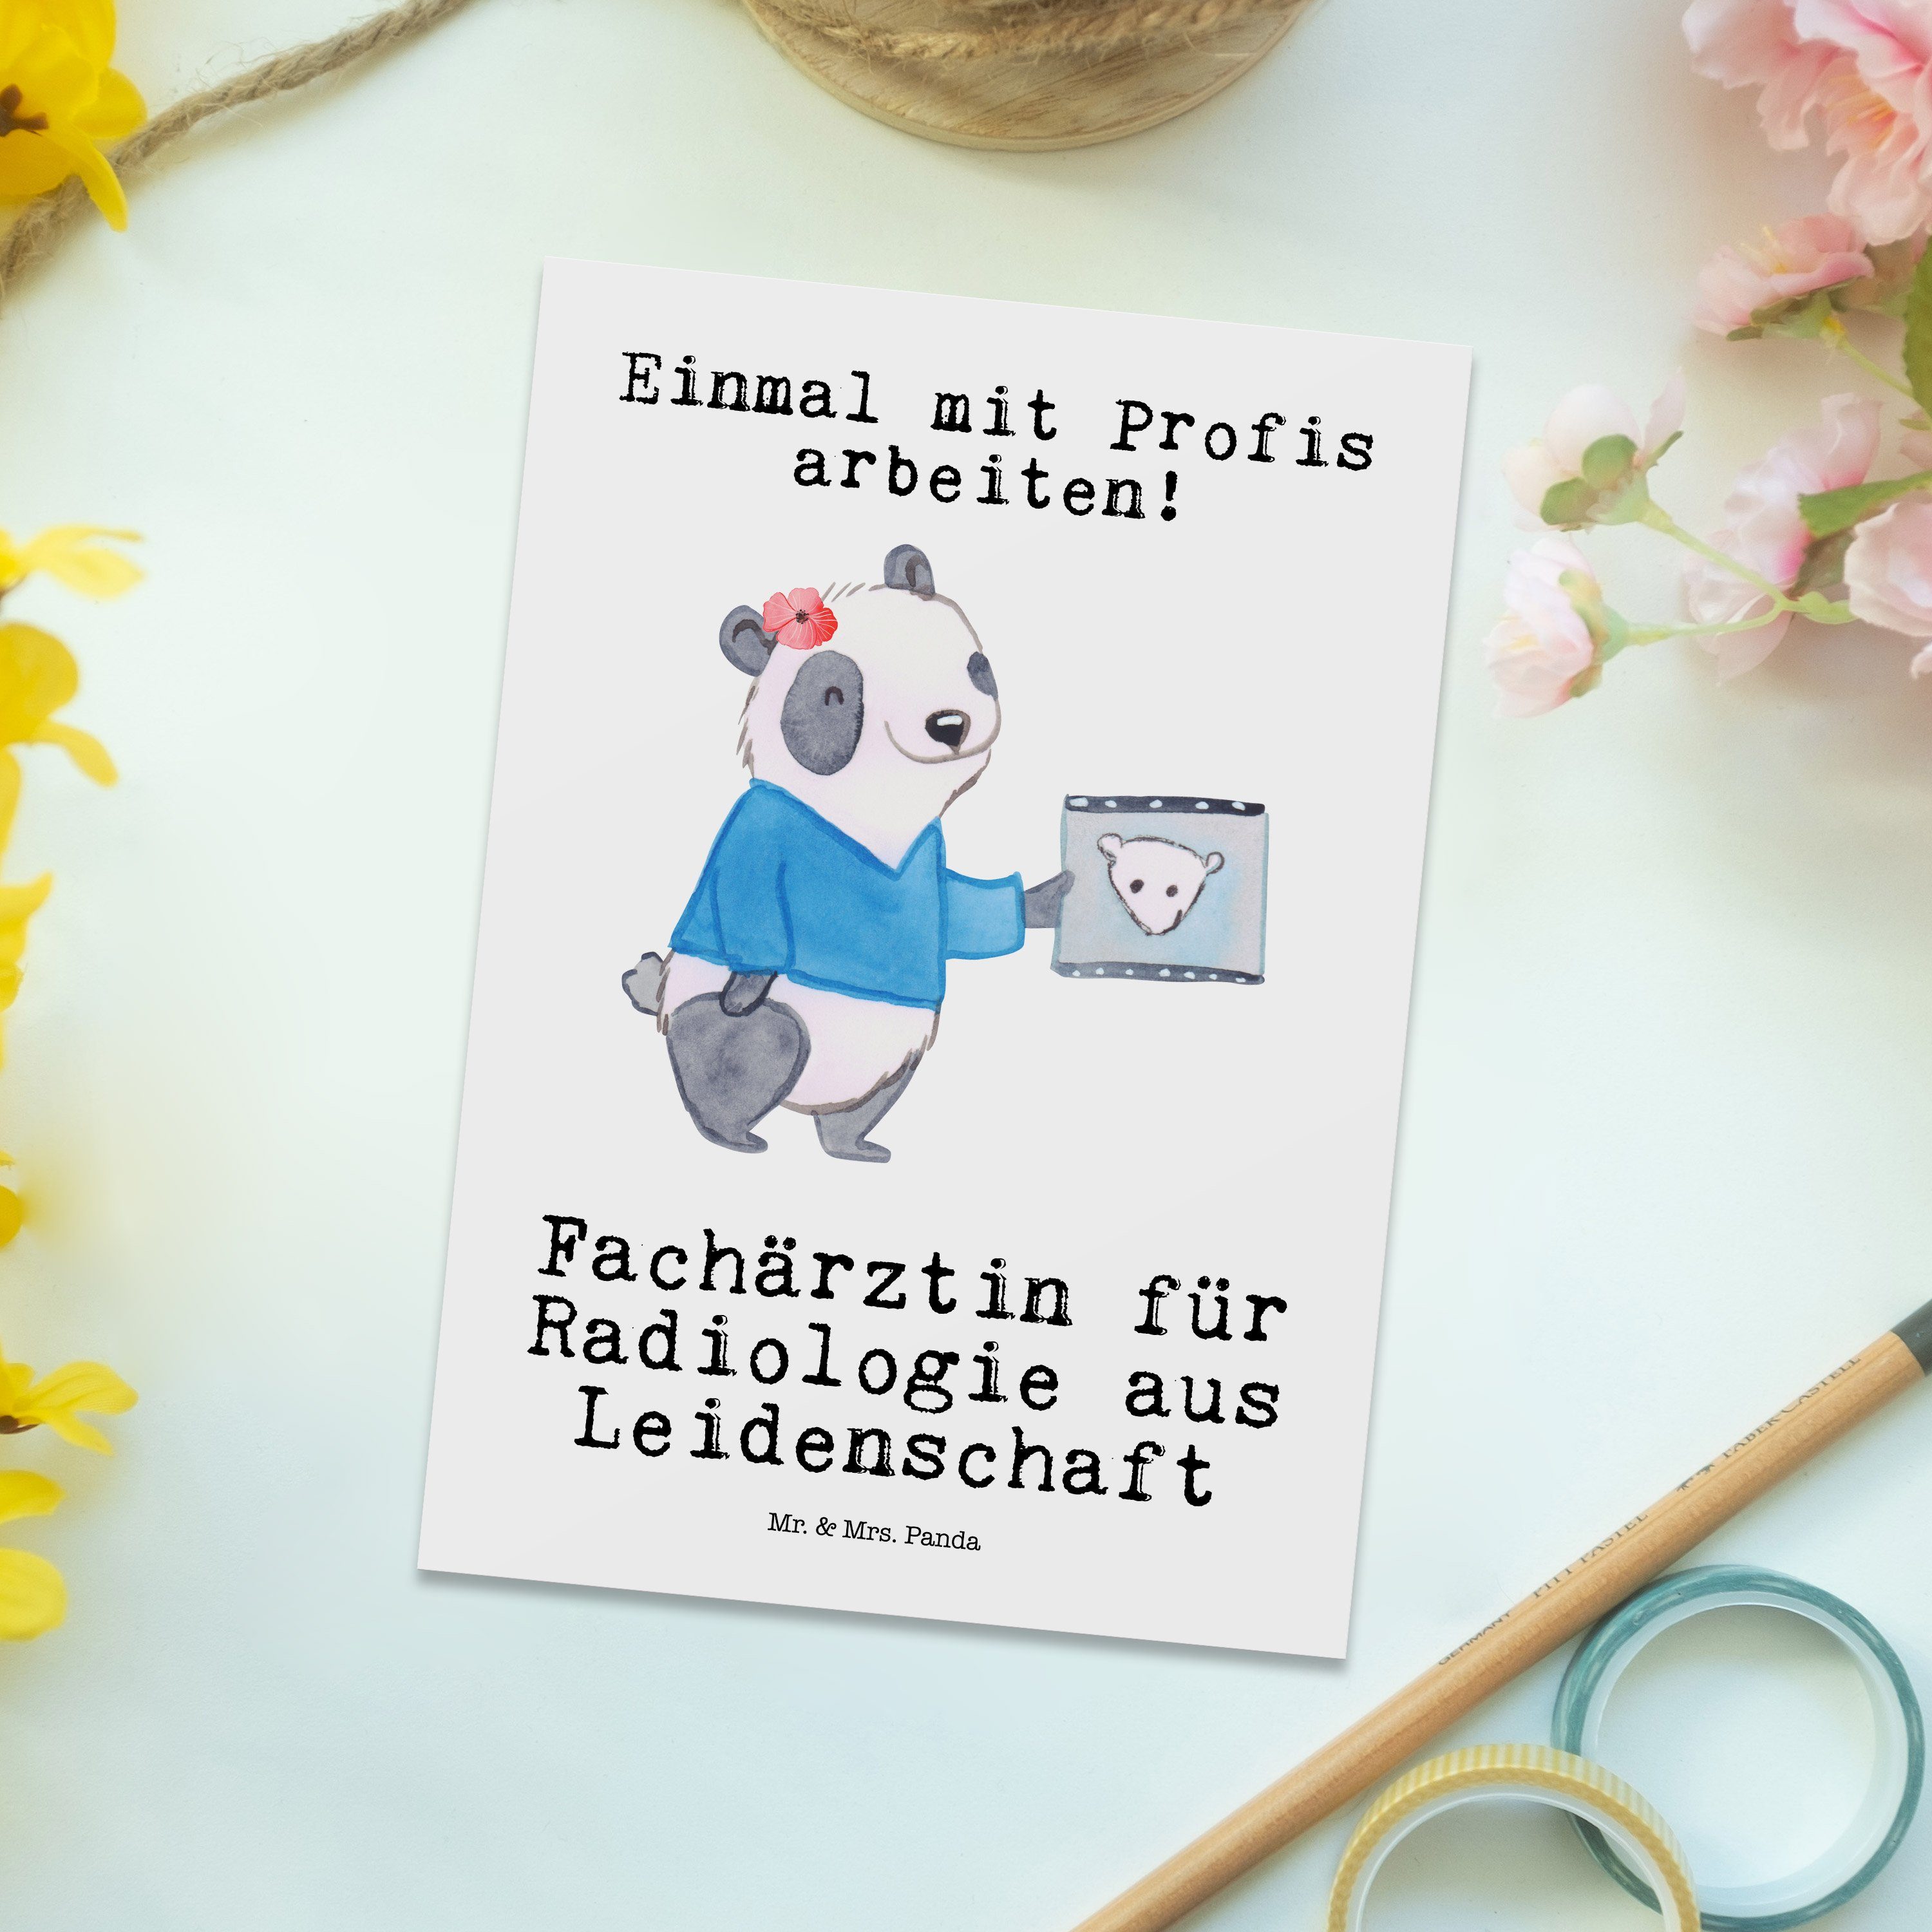 Mr. - aus für - Weiß Radiologie Abschie & Fachärztin Postkarte Panda Geschenk, Leidenschaft Mrs.